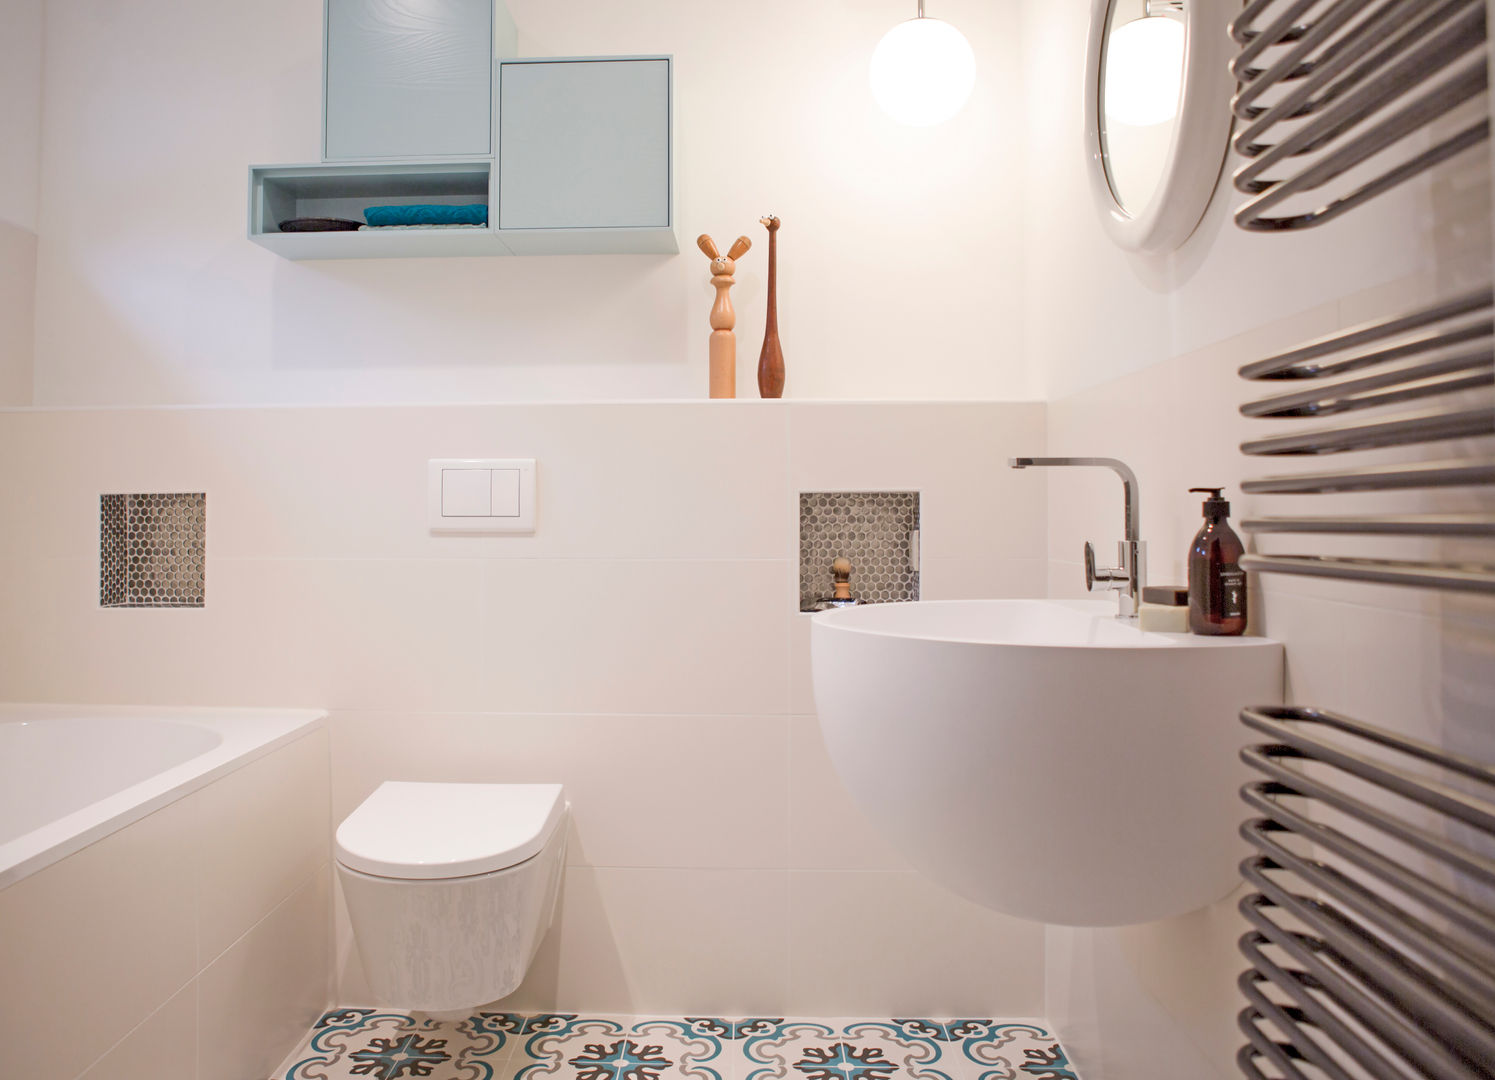 Badkamer in blauwe tinten. Bathroom, IJzersterk interieurontwerp IJzersterk interieurontwerp Modern style bathrooms